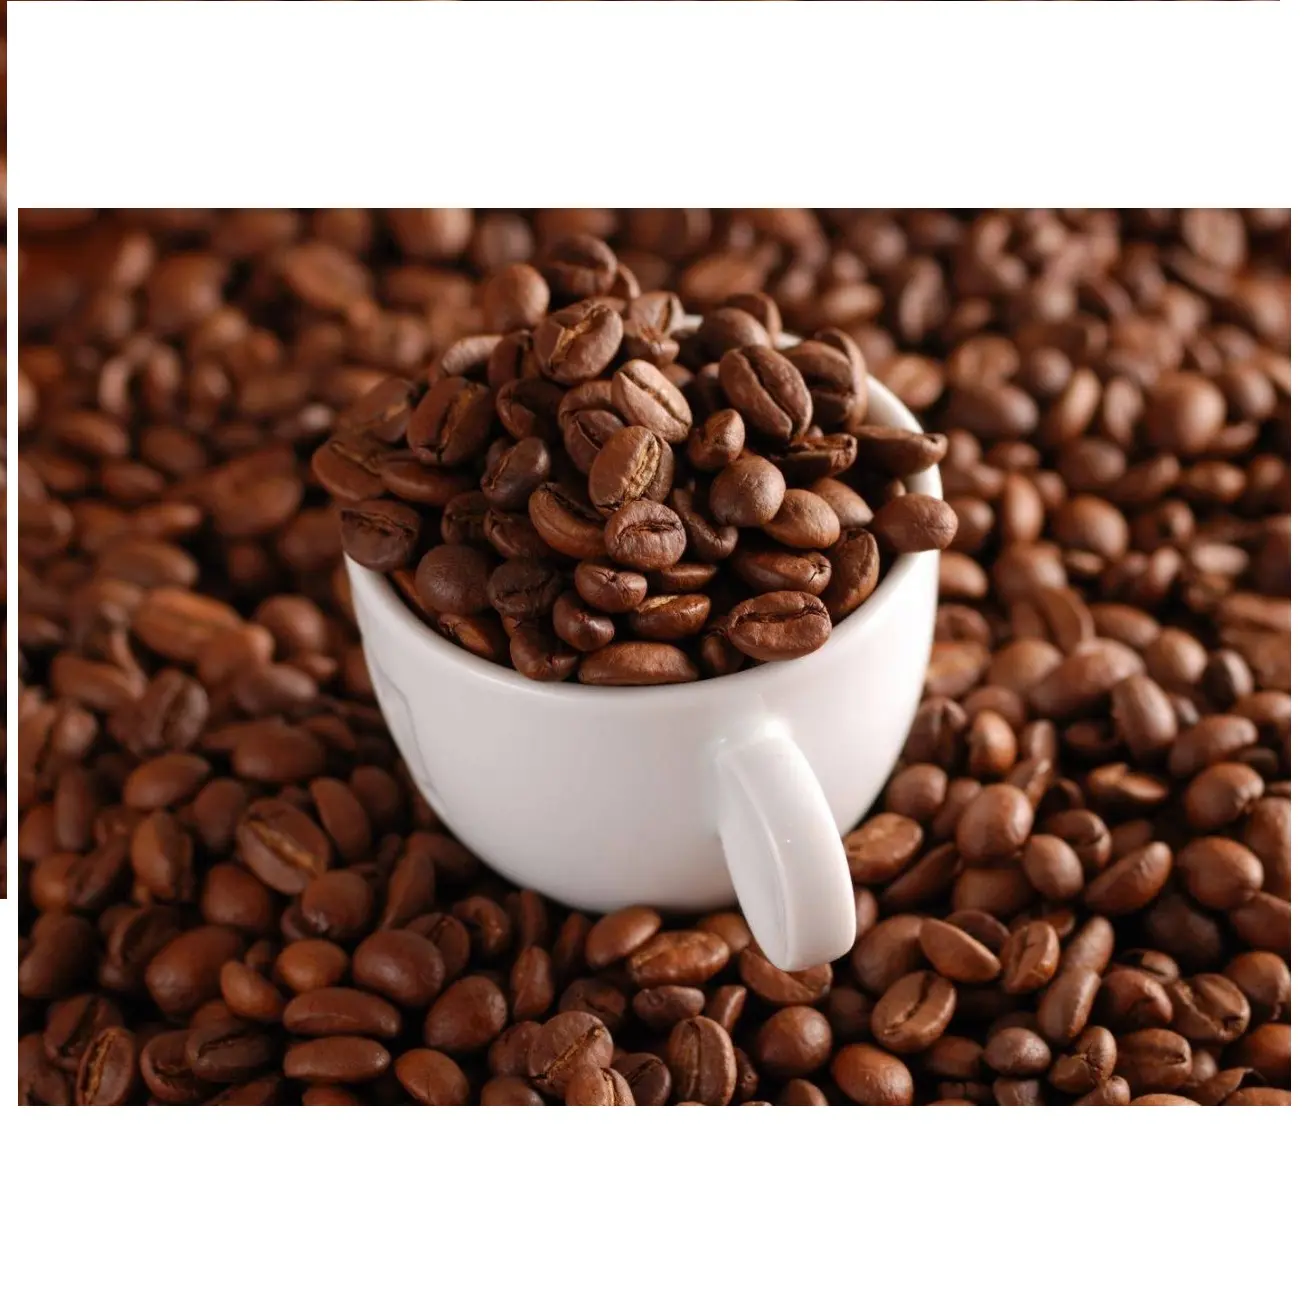 Жареный кофе оптом-высококачественный 100% чистый кофе, смешанный АРАБИКА И РОБУСТА в зернах по доступной цене-WHATSAP 0084989322607